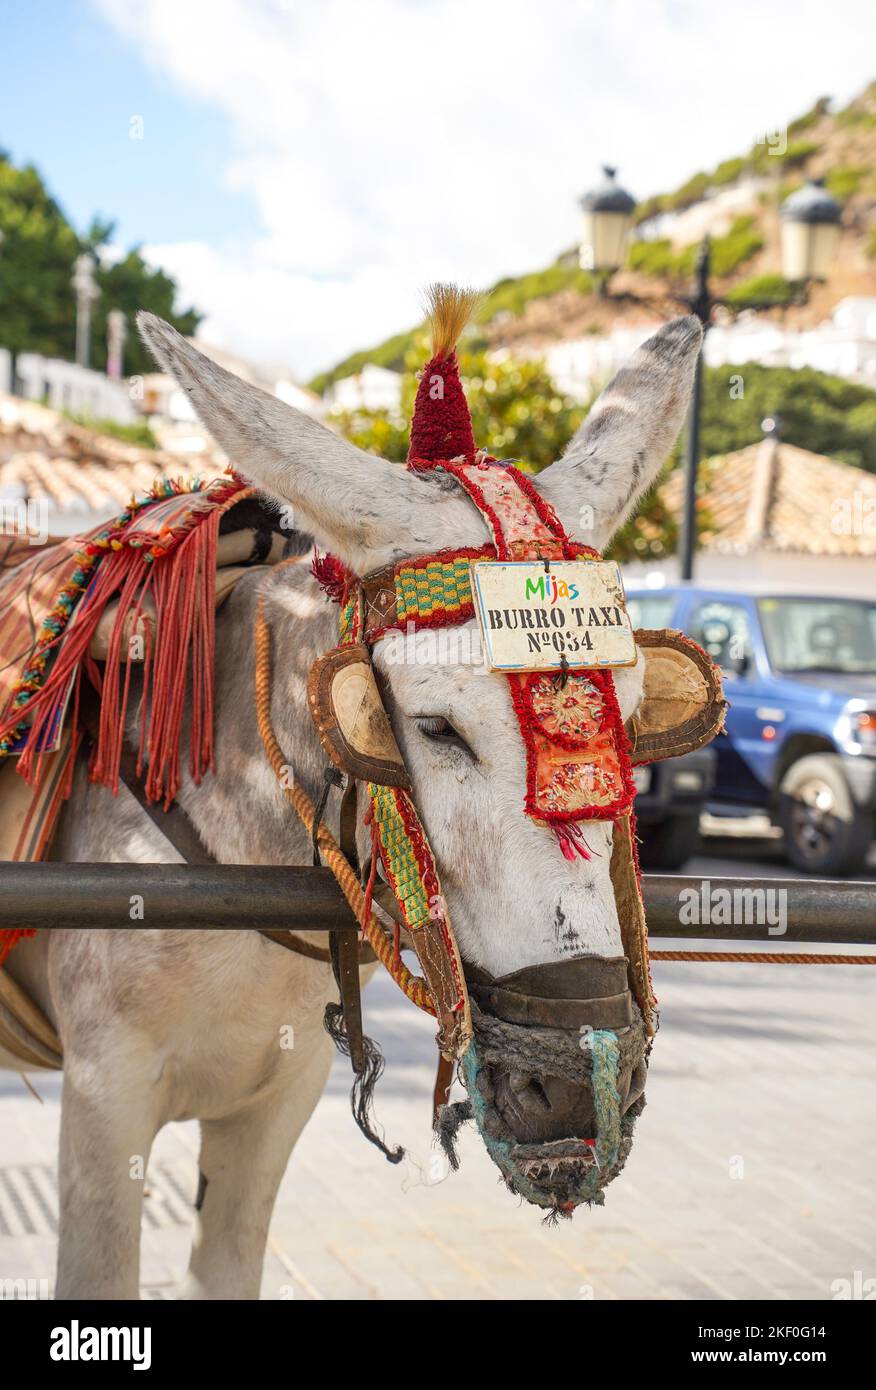 Des promenades à dos d'âne sont proposées dans le village blanchi de Mijas Pueblo, dans le sud de l'Espagne. Andalousie. Banque D'Images